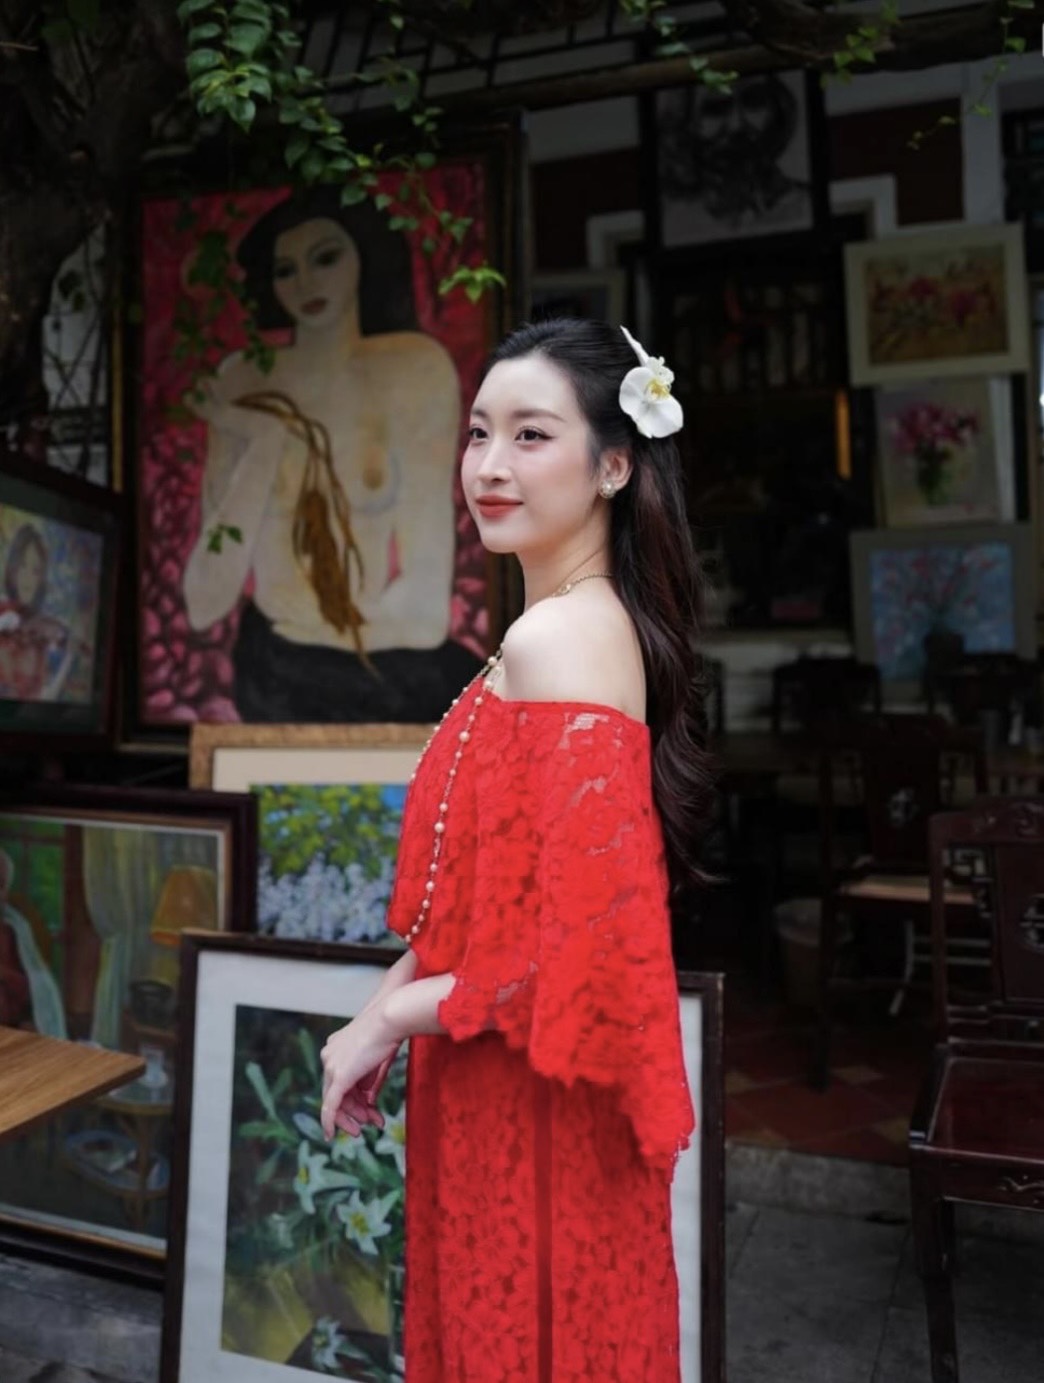 Đỗ Mỹ Linh khoe outfit đón Tết, sắc vóc mẹ bỉm hot nhất nhì showbiz khiến fan xuýt xoa - Ảnh 4.